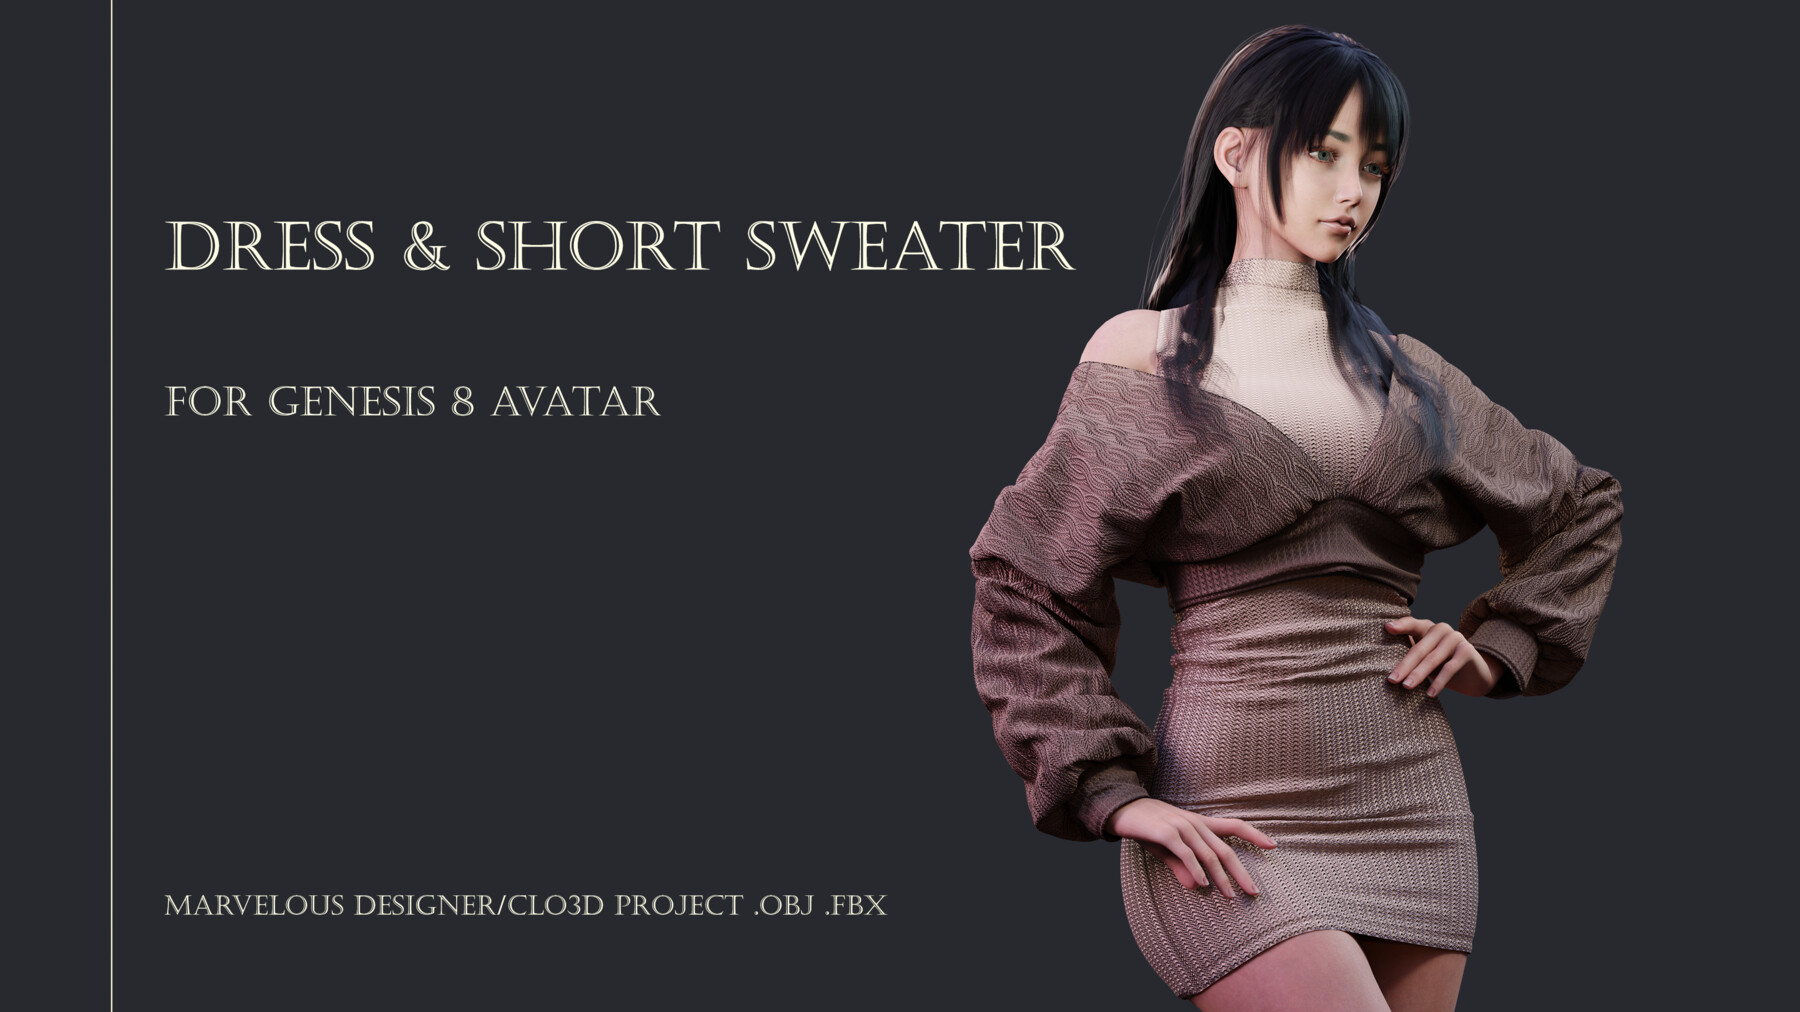 ArtStation - DRESS & SHORT SWEATER FOR AVATAR GENESIS 8 FEMALE. MARVELOUS  DESIGNER/CLO3D PROJECT .obj.fbx